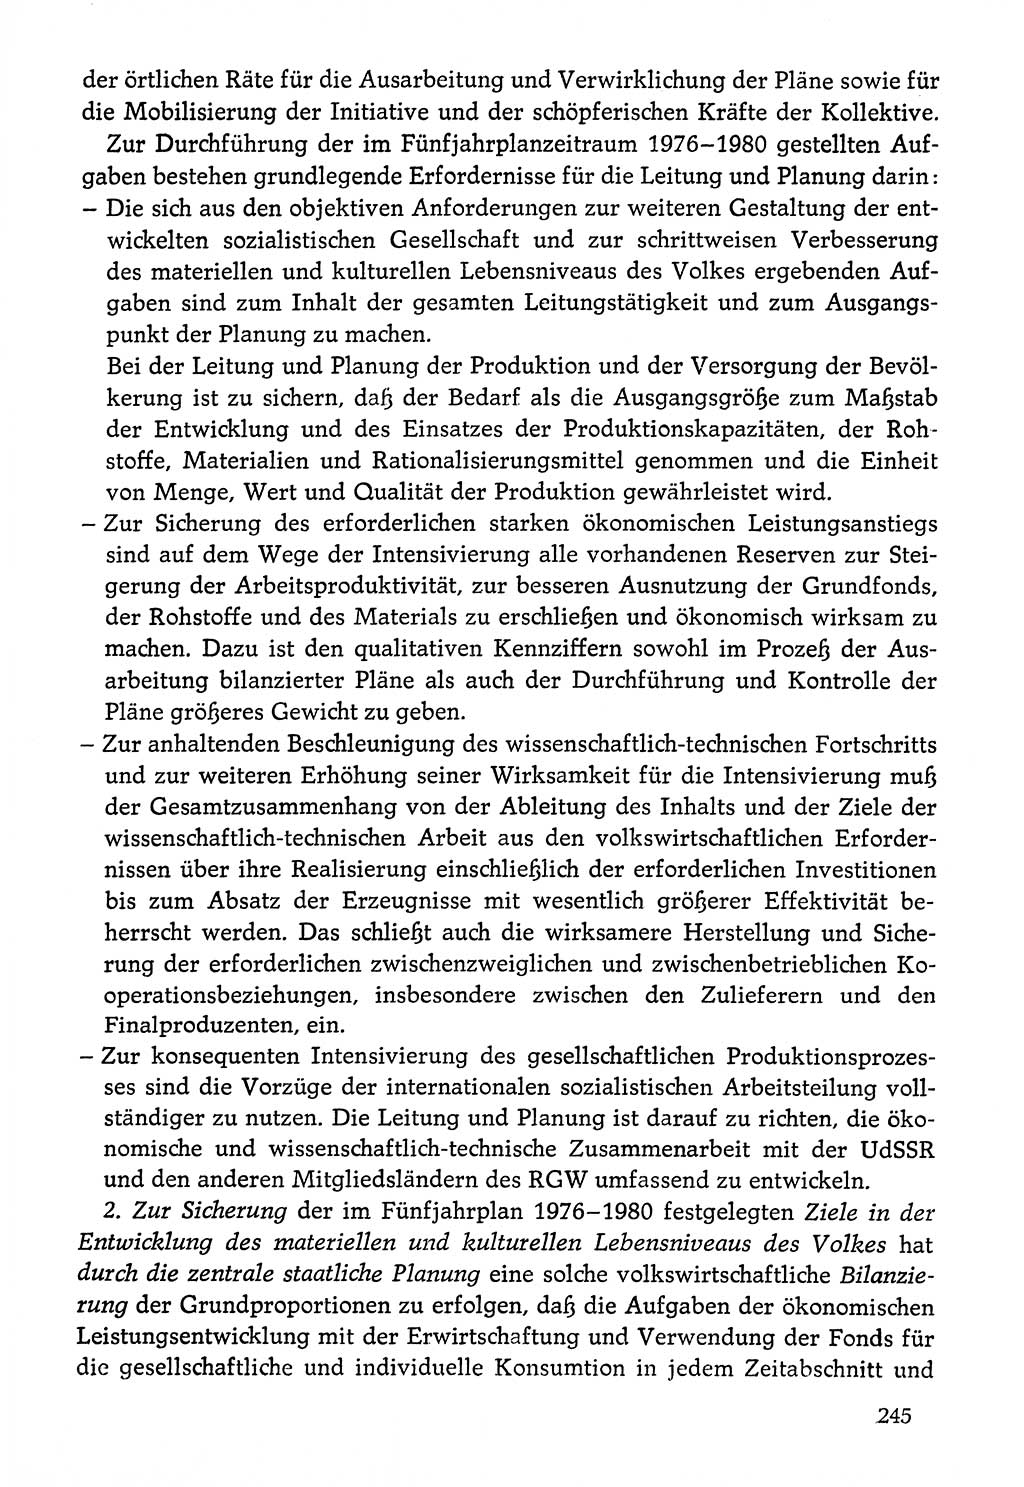 Dokumente der Sozialistischen Einheitspartei Deutschlands (SED) [Deutsche Demokratische Republik (DDR)] 1976-1977, Seite 245 (Dok. SED DDR 1976-1977, S. 245)